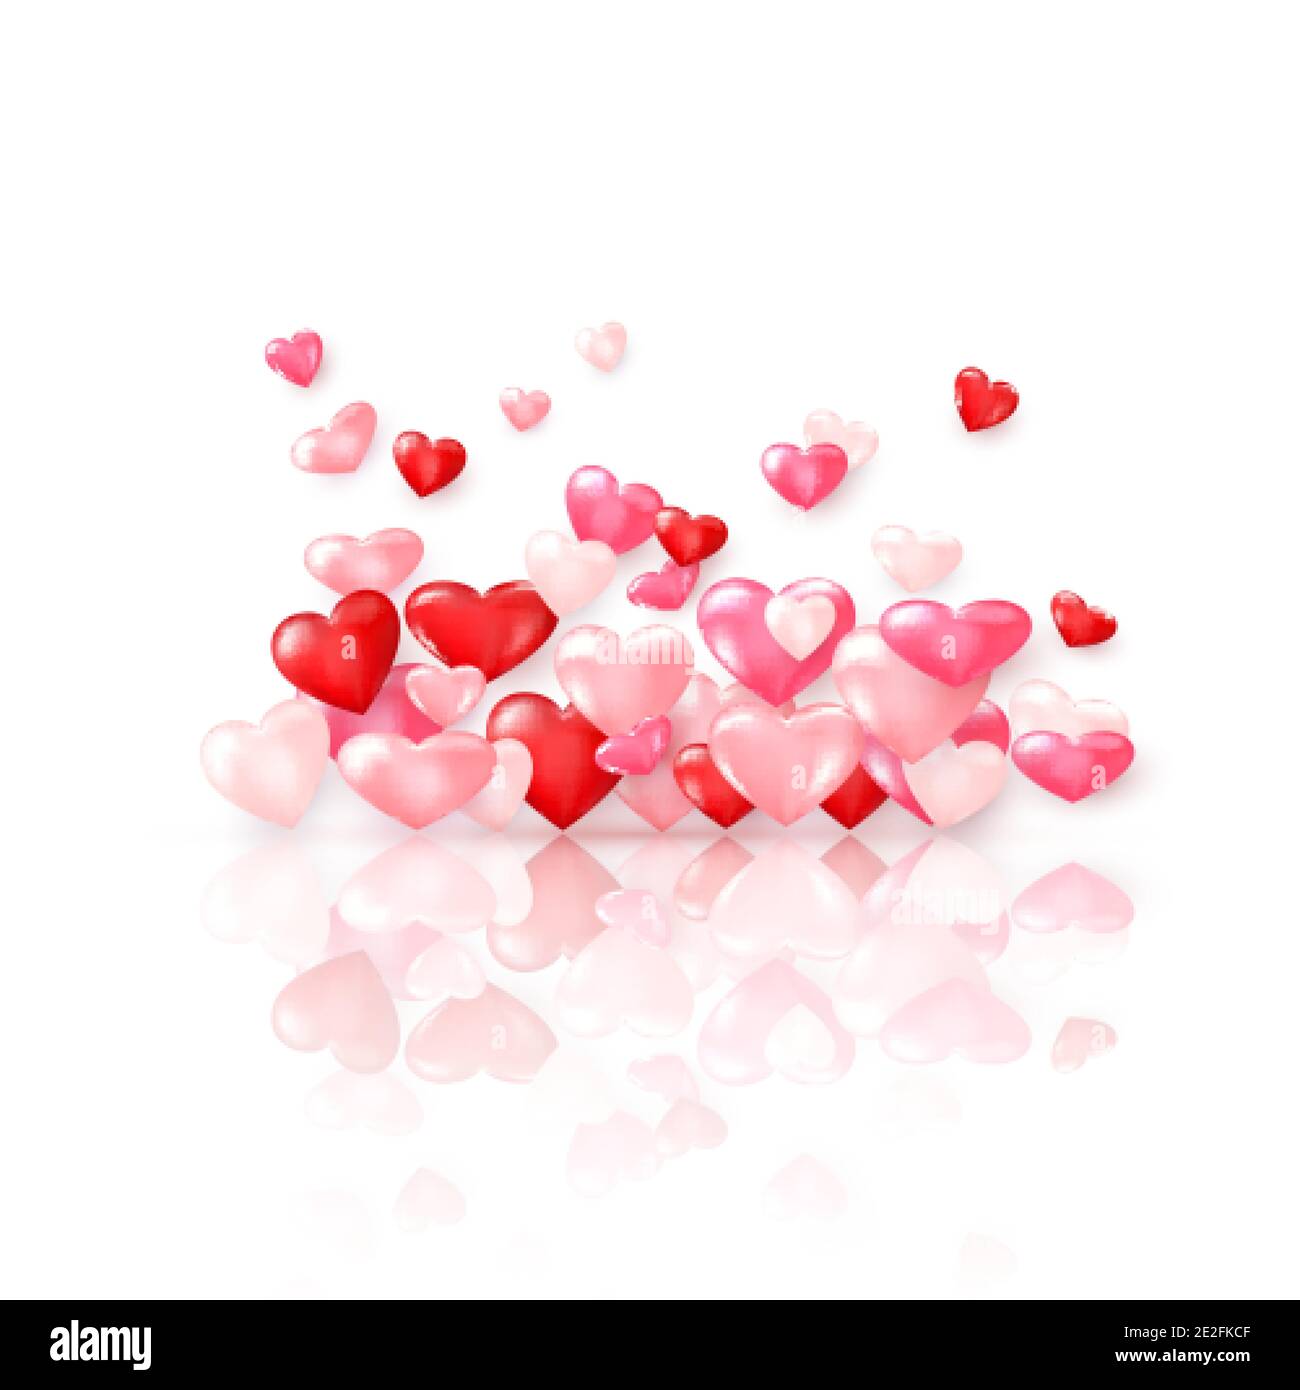 Gruppo di cuori rossi lucidi con riflessi. Elemento decorativo giorno San Valentino. Vettore Illustrazione Vettoriale